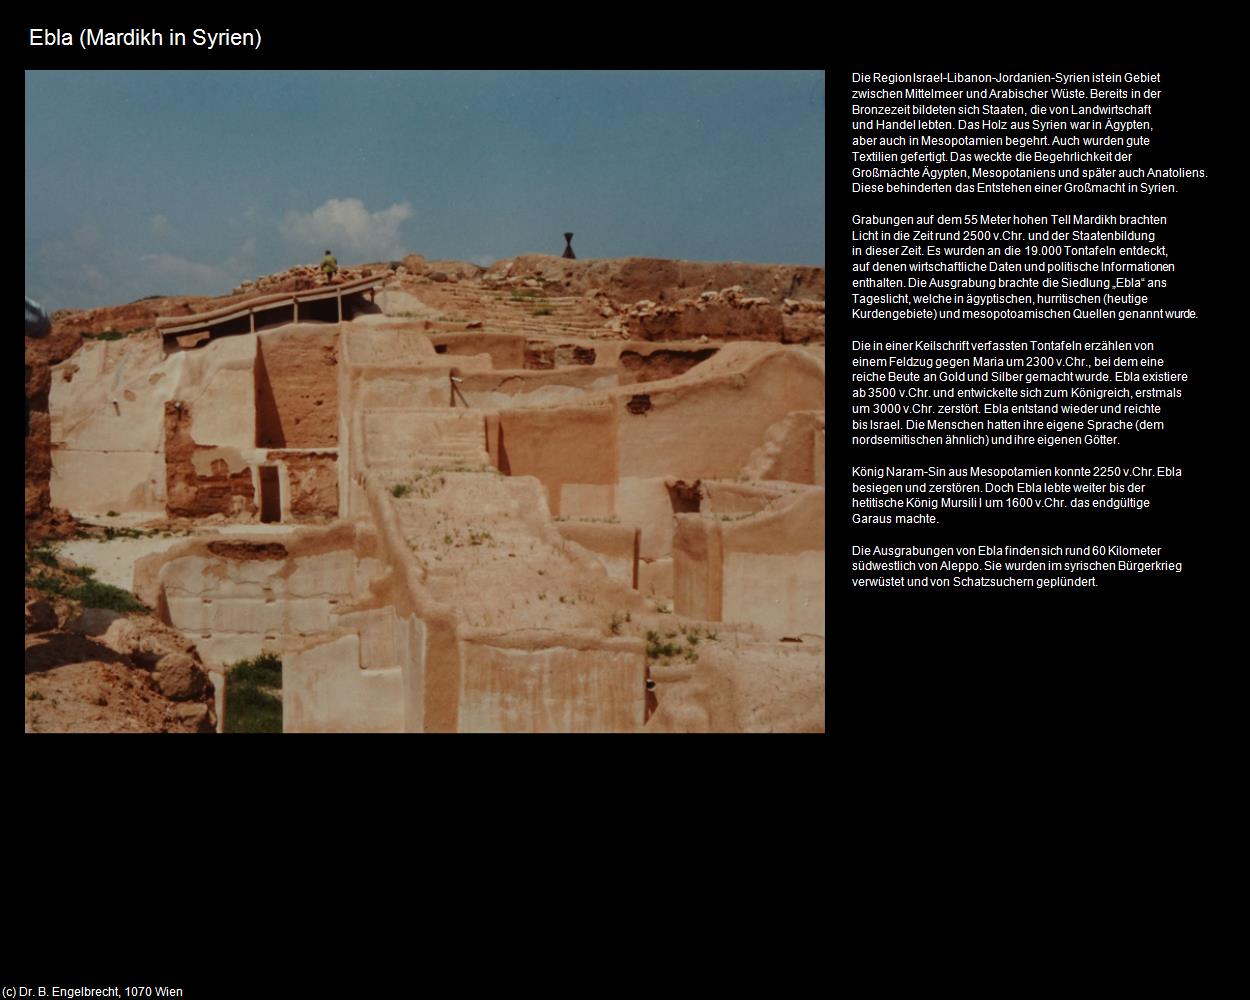 Ebla (Mardikh (SYR)) in Kulturatlas-JORDANIEN-SYRIEN-LIBANON